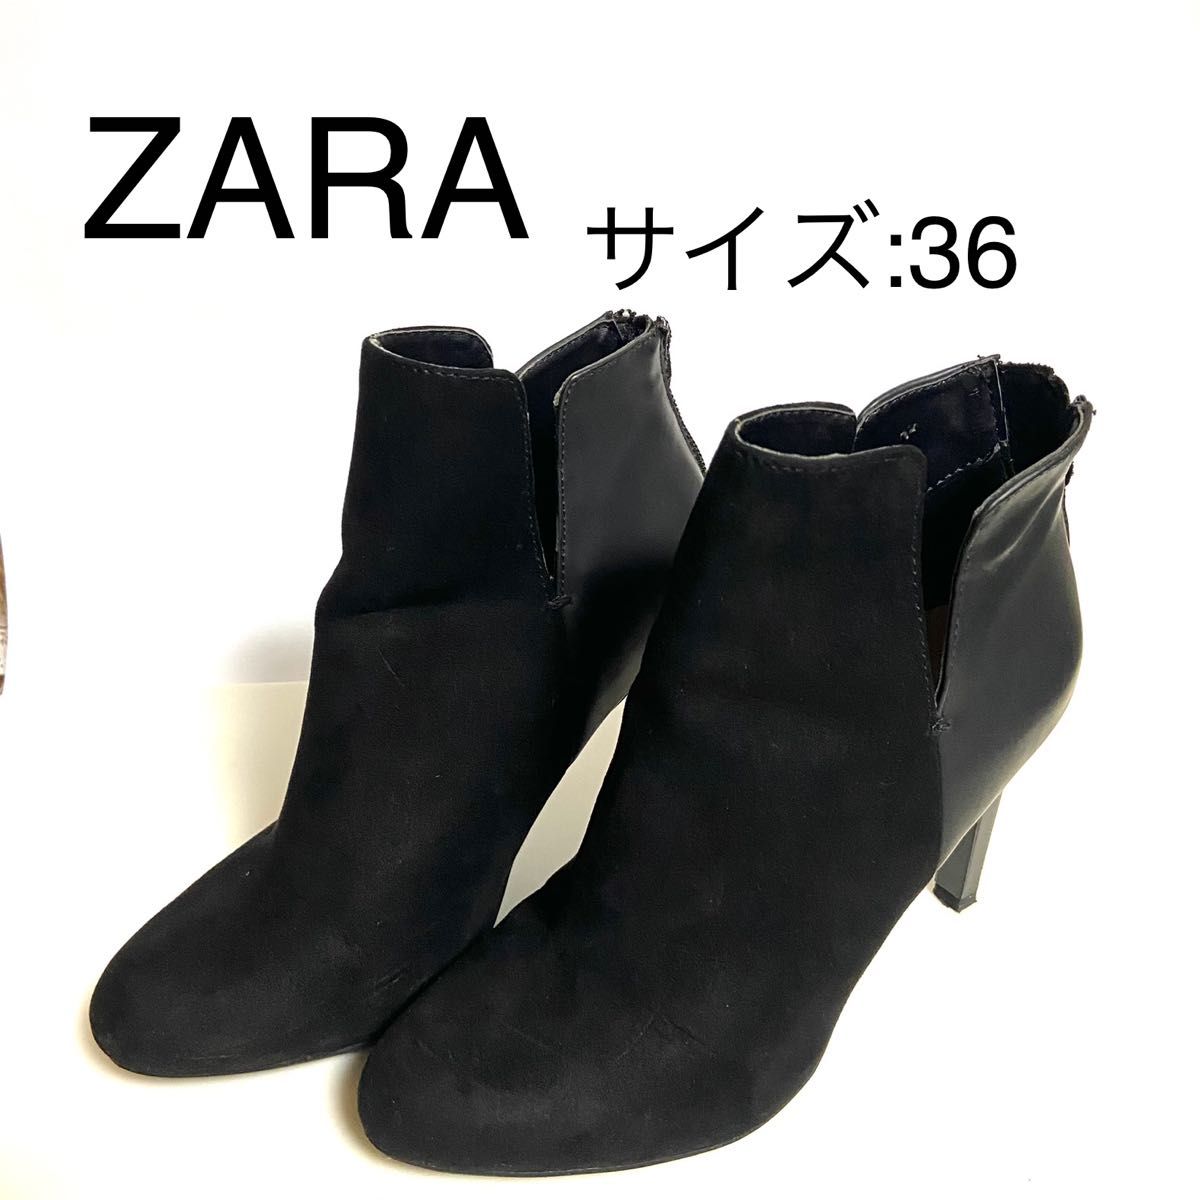 ZARAブーツ size36 - 靴